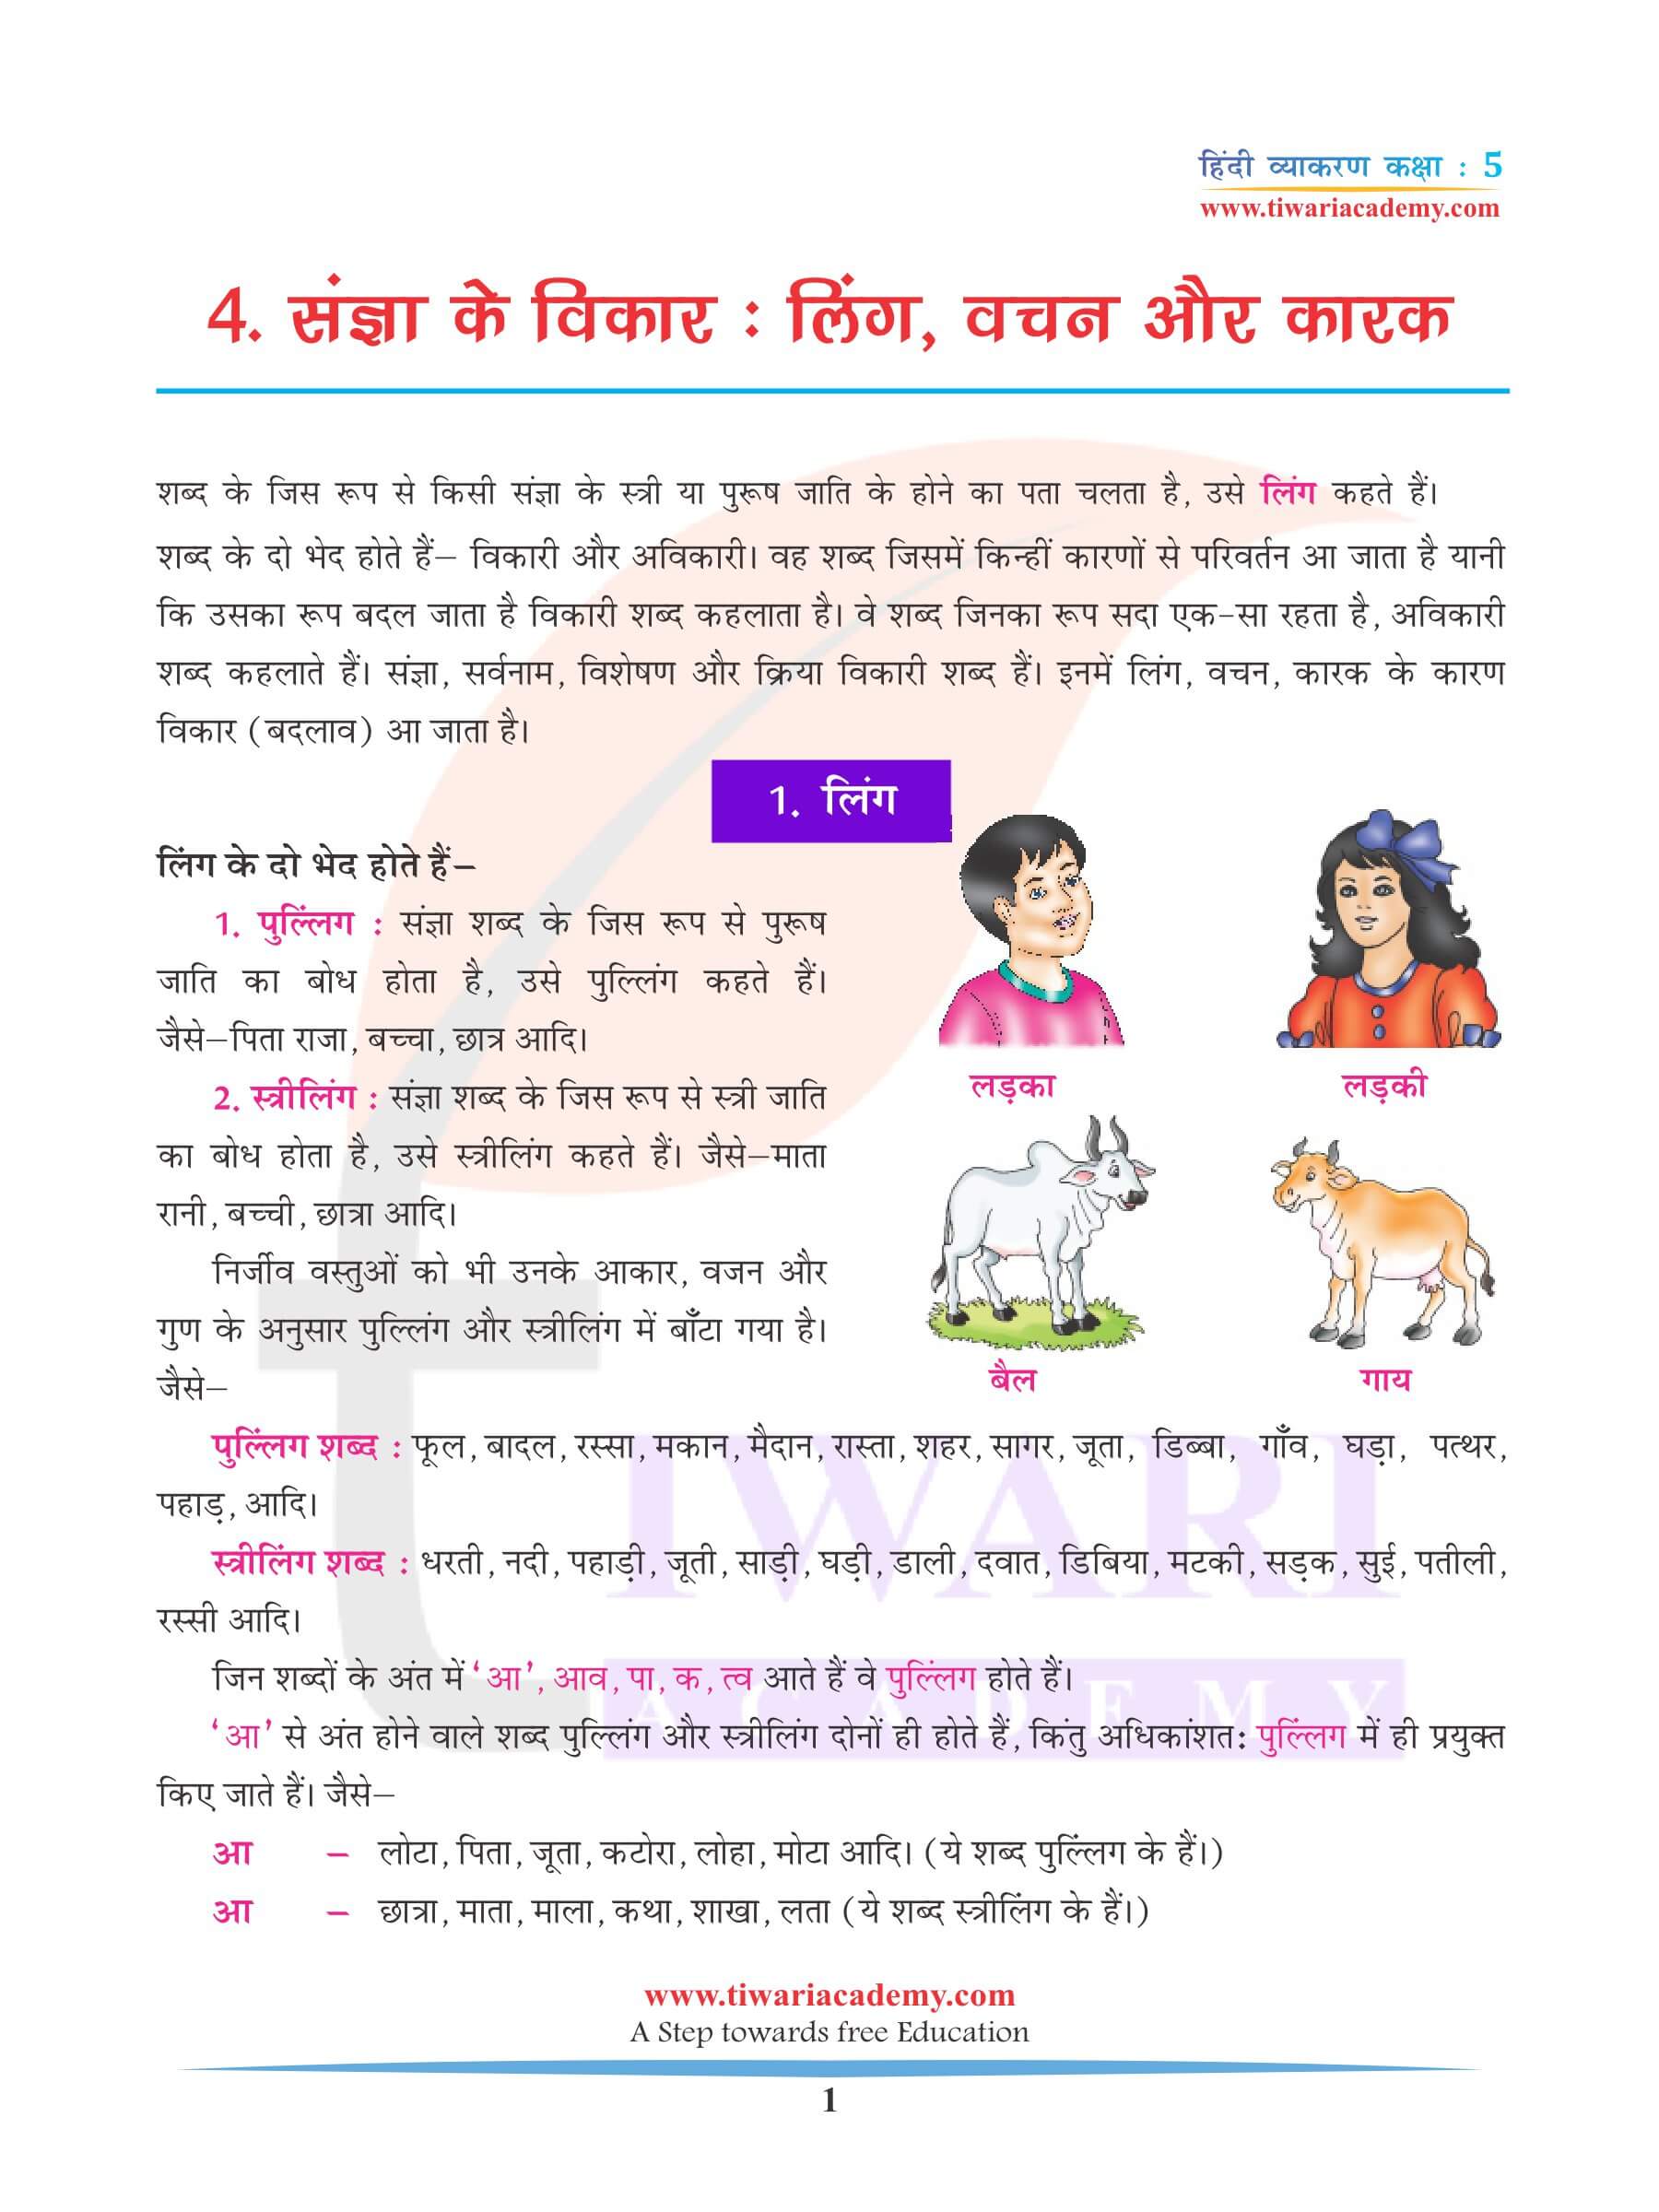 कक्षा 5 हिंदी व्याकरण लिंग, वचन और कारक